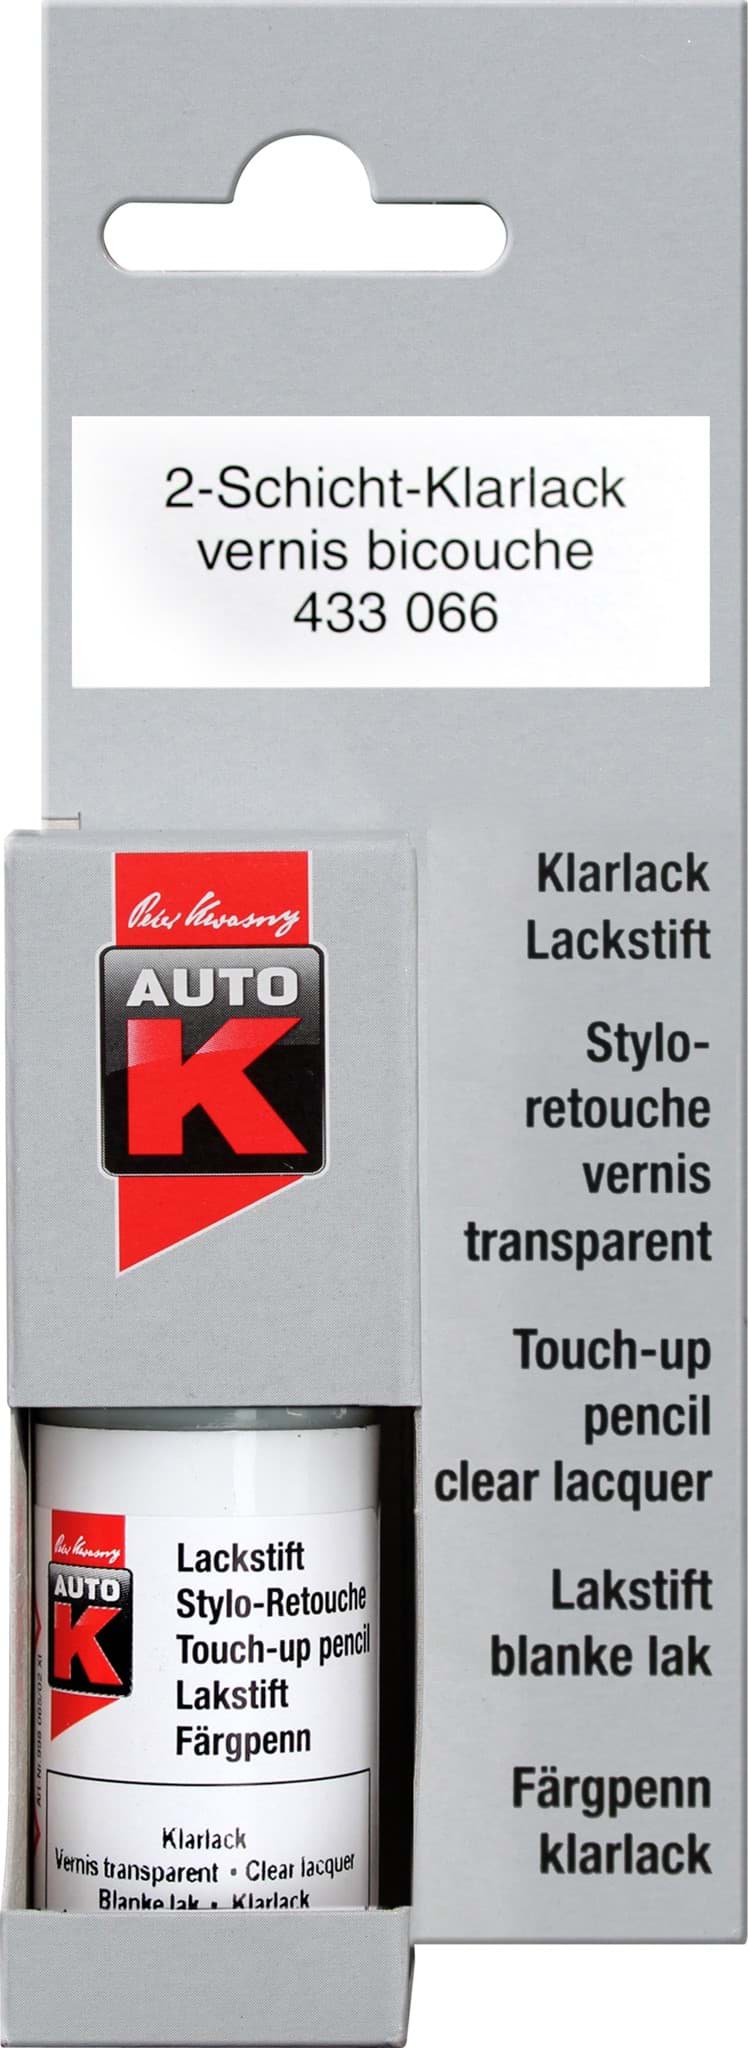 Obraz AutoK Lackstift Tupflack 2-Schicht-Klarlack 433066